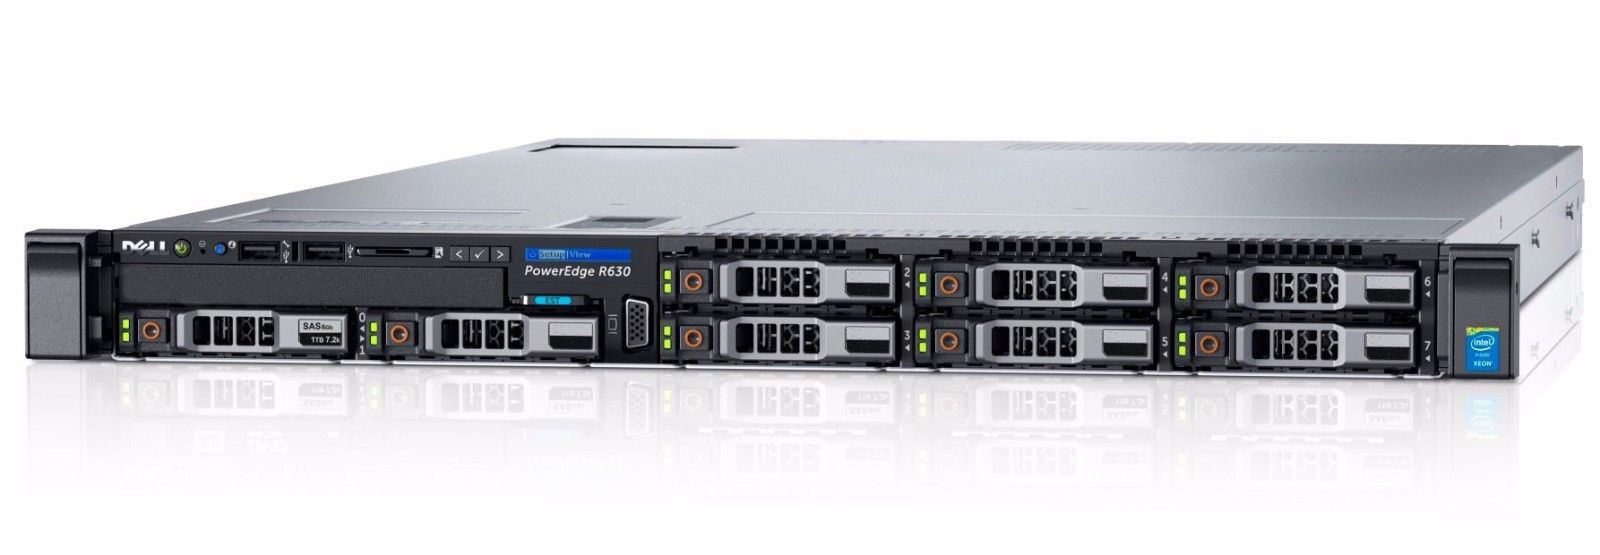 R630 Servidor Rack Dell PowerEdge 1U Ideal para Virtualização e Banco de Dados - Seminovo pronta entrega